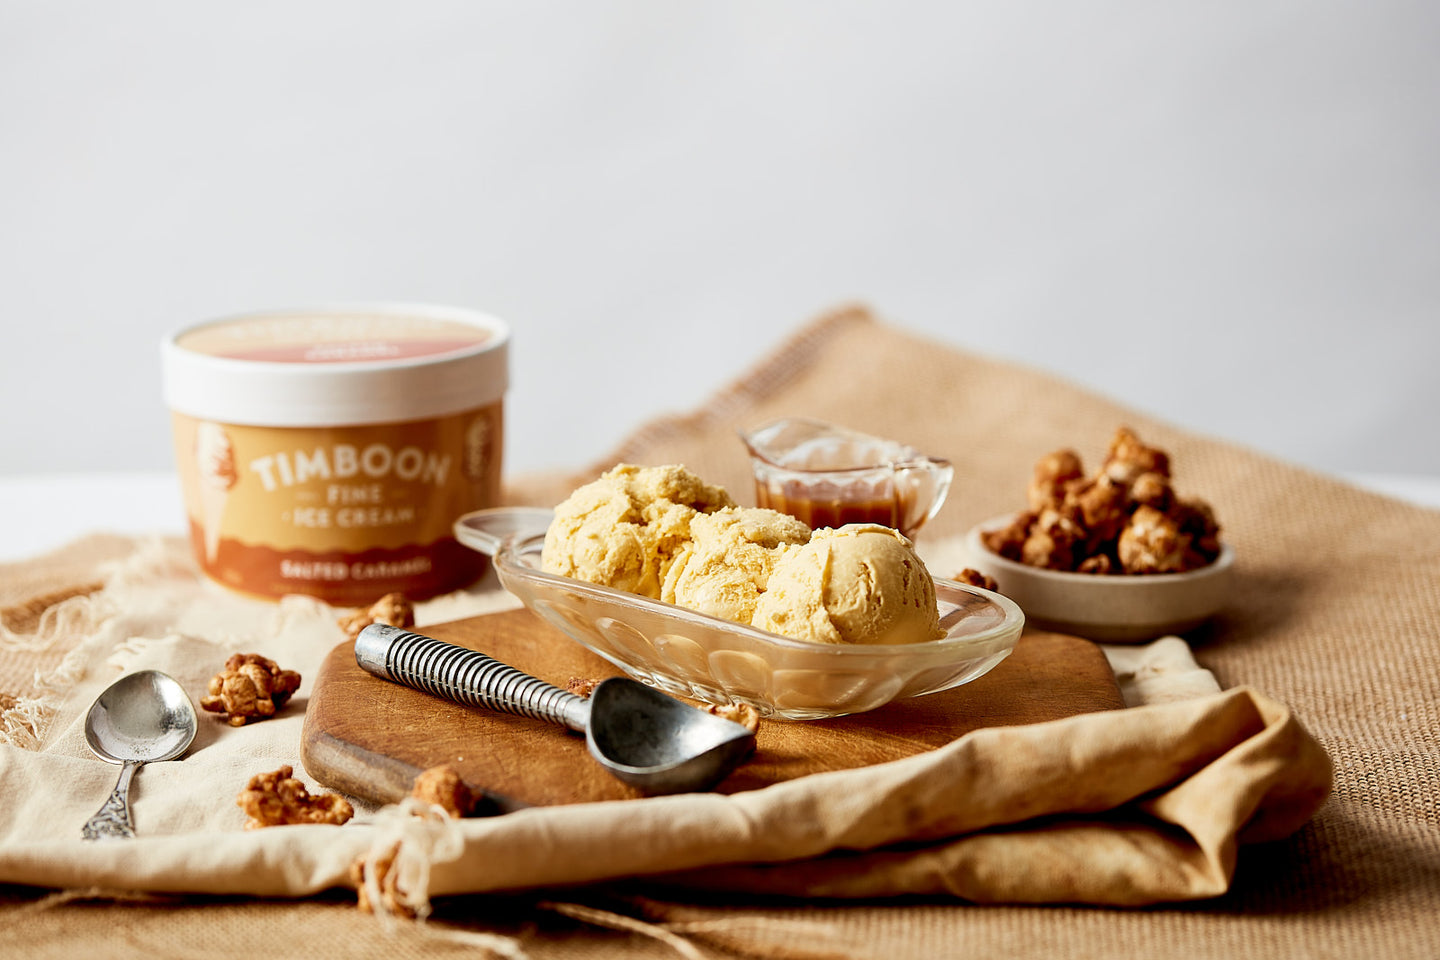 Timboon Fine Ice Cream